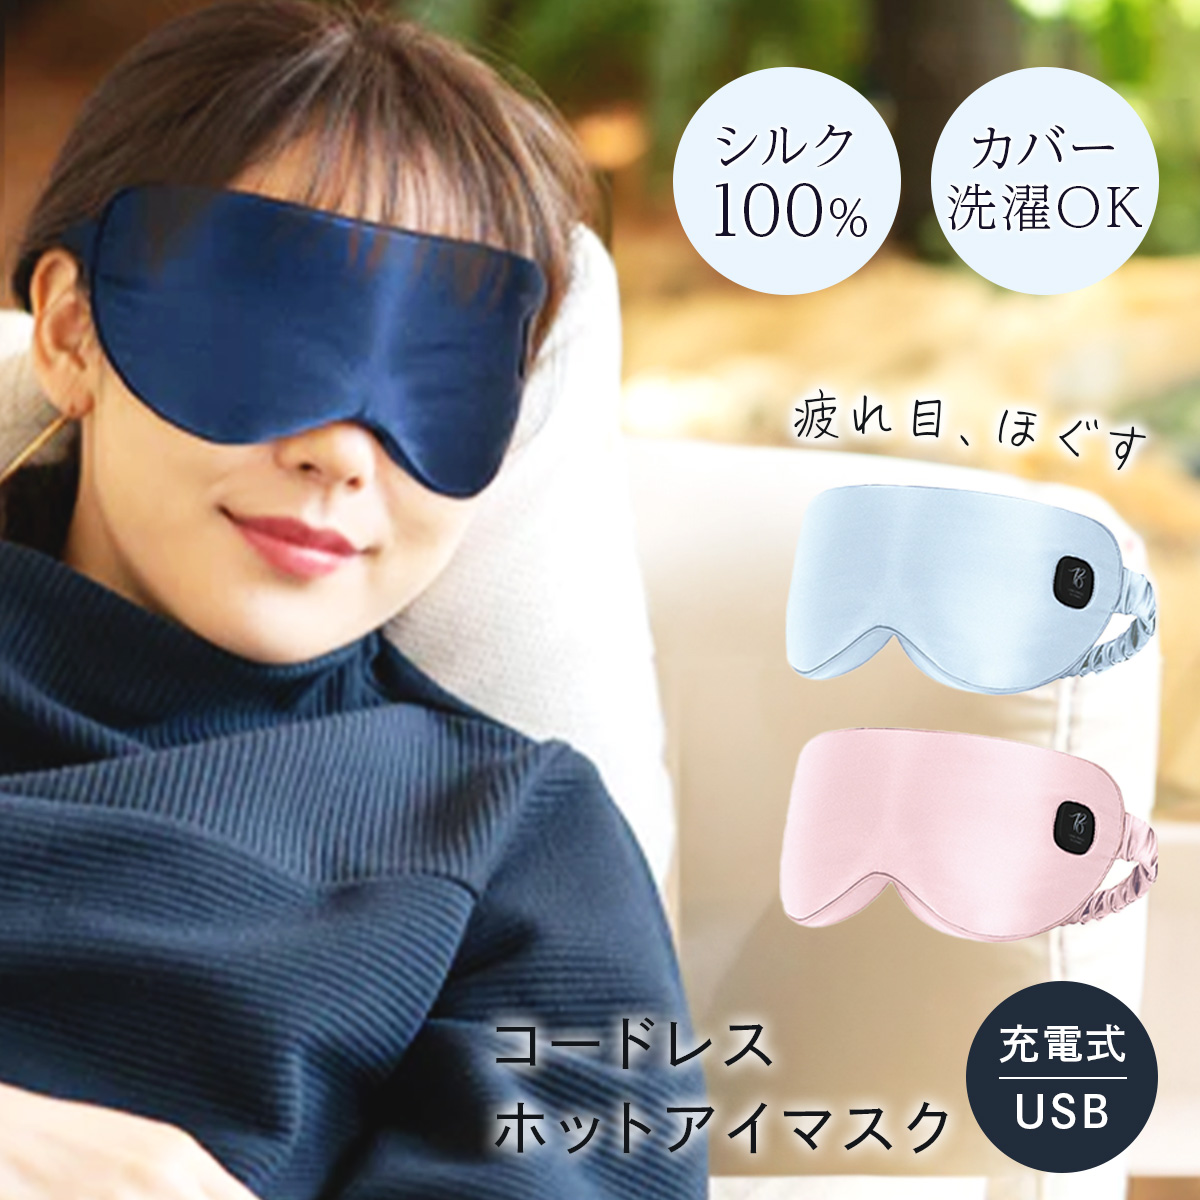 マスク ホットアイマスク PriO コードレスホットアイマスク 眼精疲労 疲労 目元 温め アイマスク USB充電式 コードレス シルク100％  プリオ 正規販売店